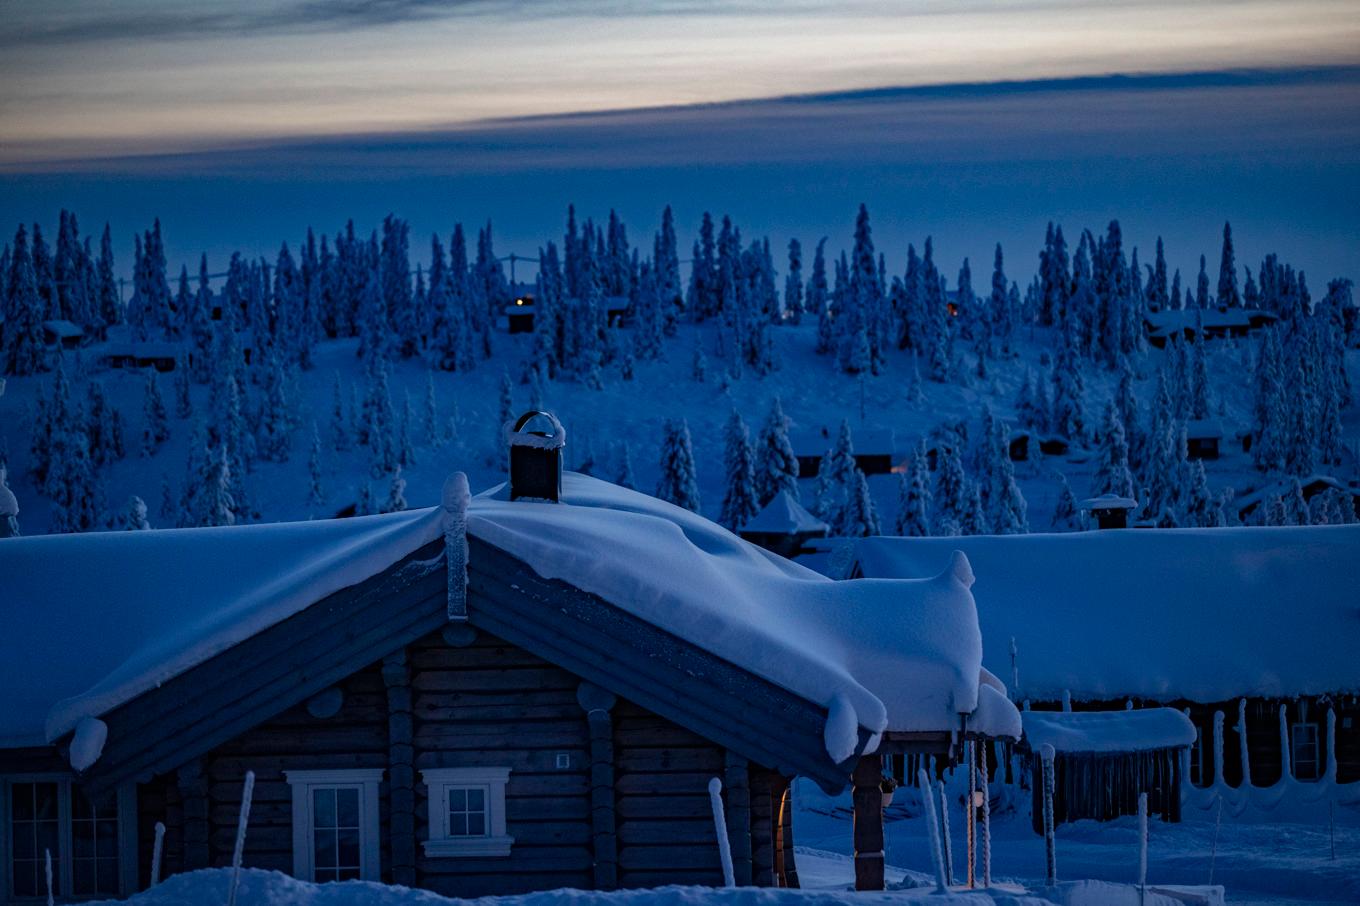 Att fritidshusen har stått kalla i den kyliga vintern ökar risken för att drabbas av vattenskada. Arkivbild. Foto: Geir Olsen/NTB/TT